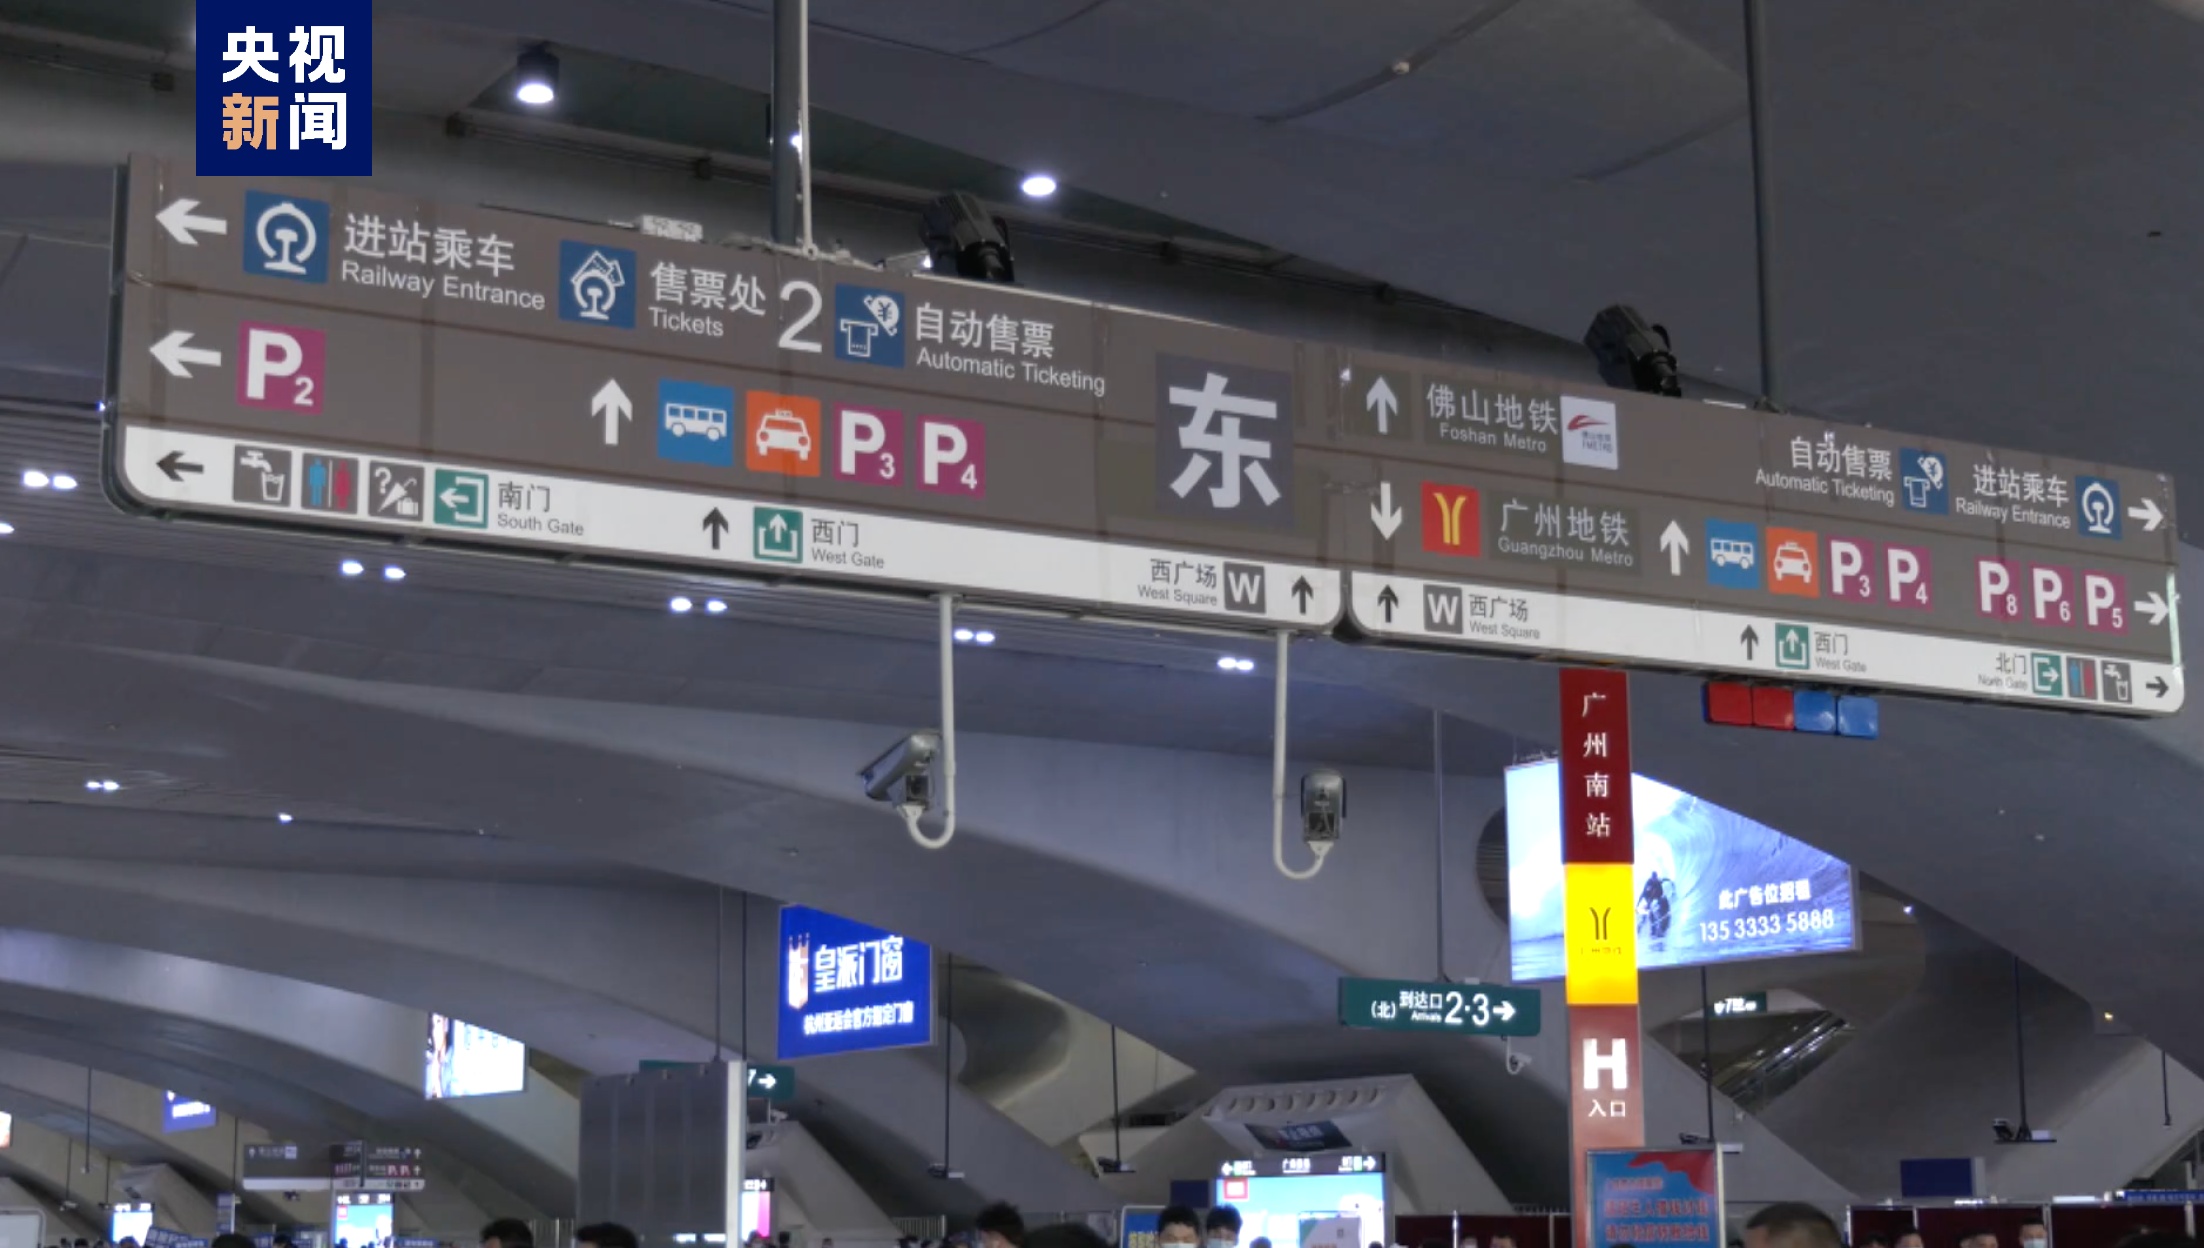 此外,广州南站每天根据列车开行及到达客流情况,积极与广州市交通部门